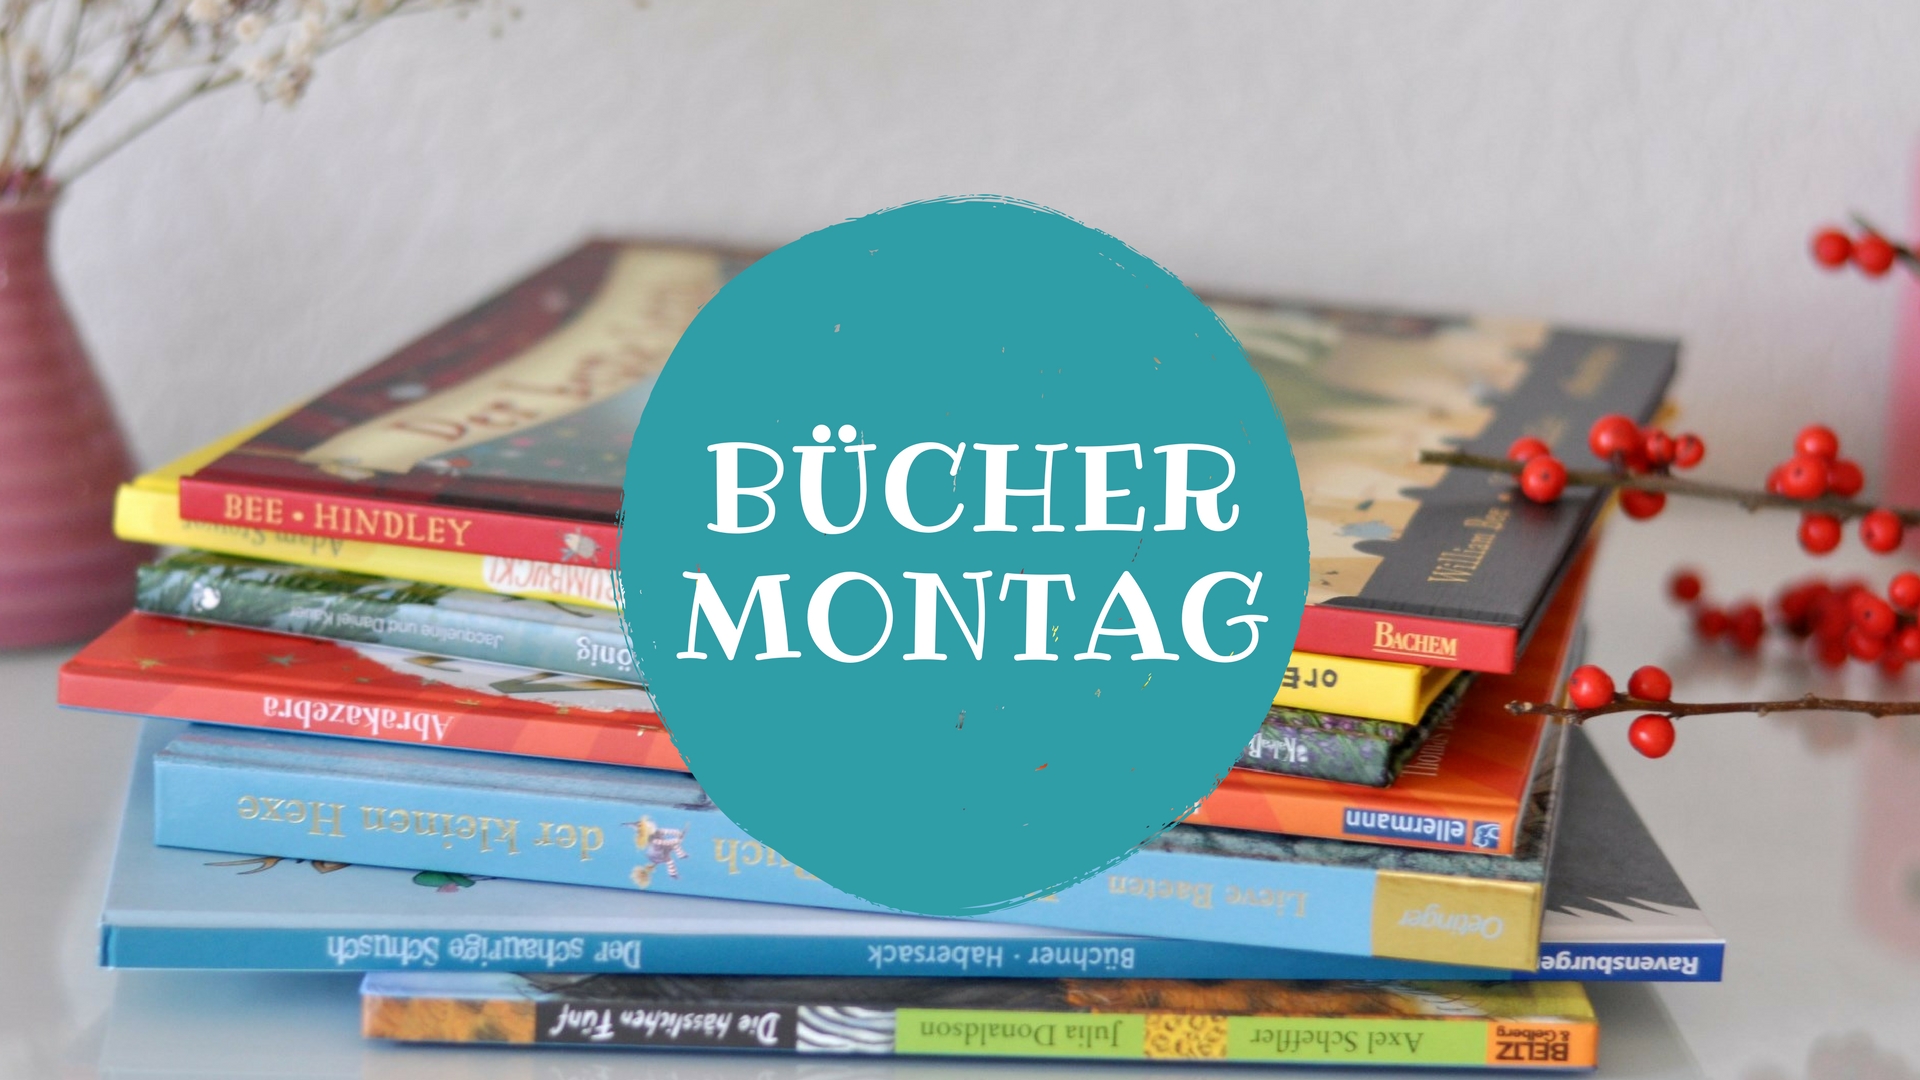 Bücher Montag - Kinderbücher Sammlung von Kinderbuchbloggern - März 2018 #kinderbuch